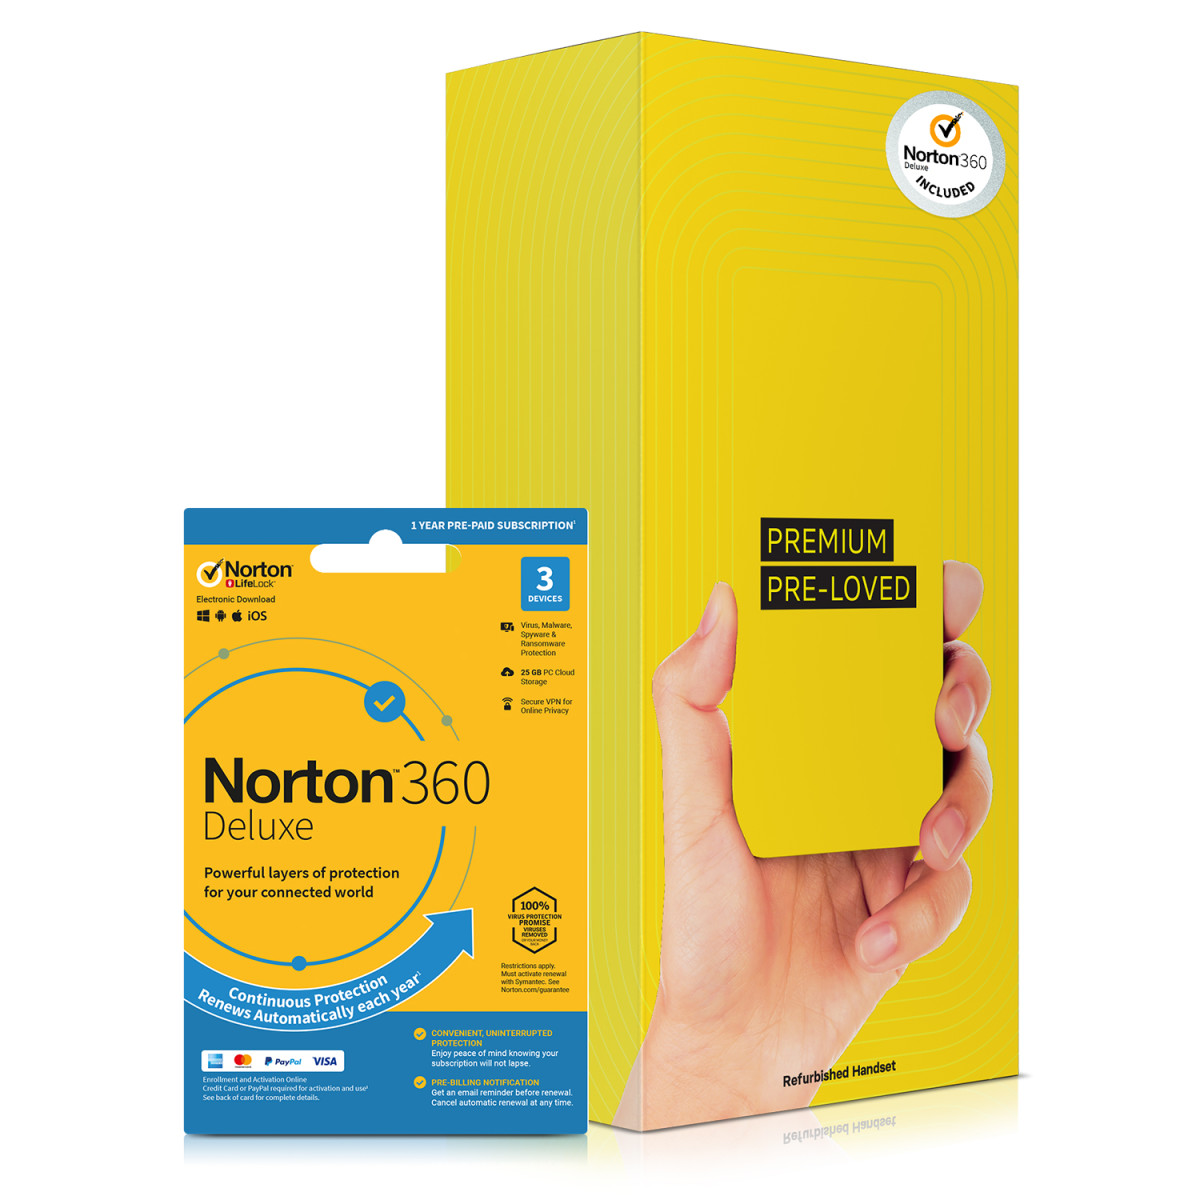 PPL iPh X 64GB - S.Gry +Norton REF A